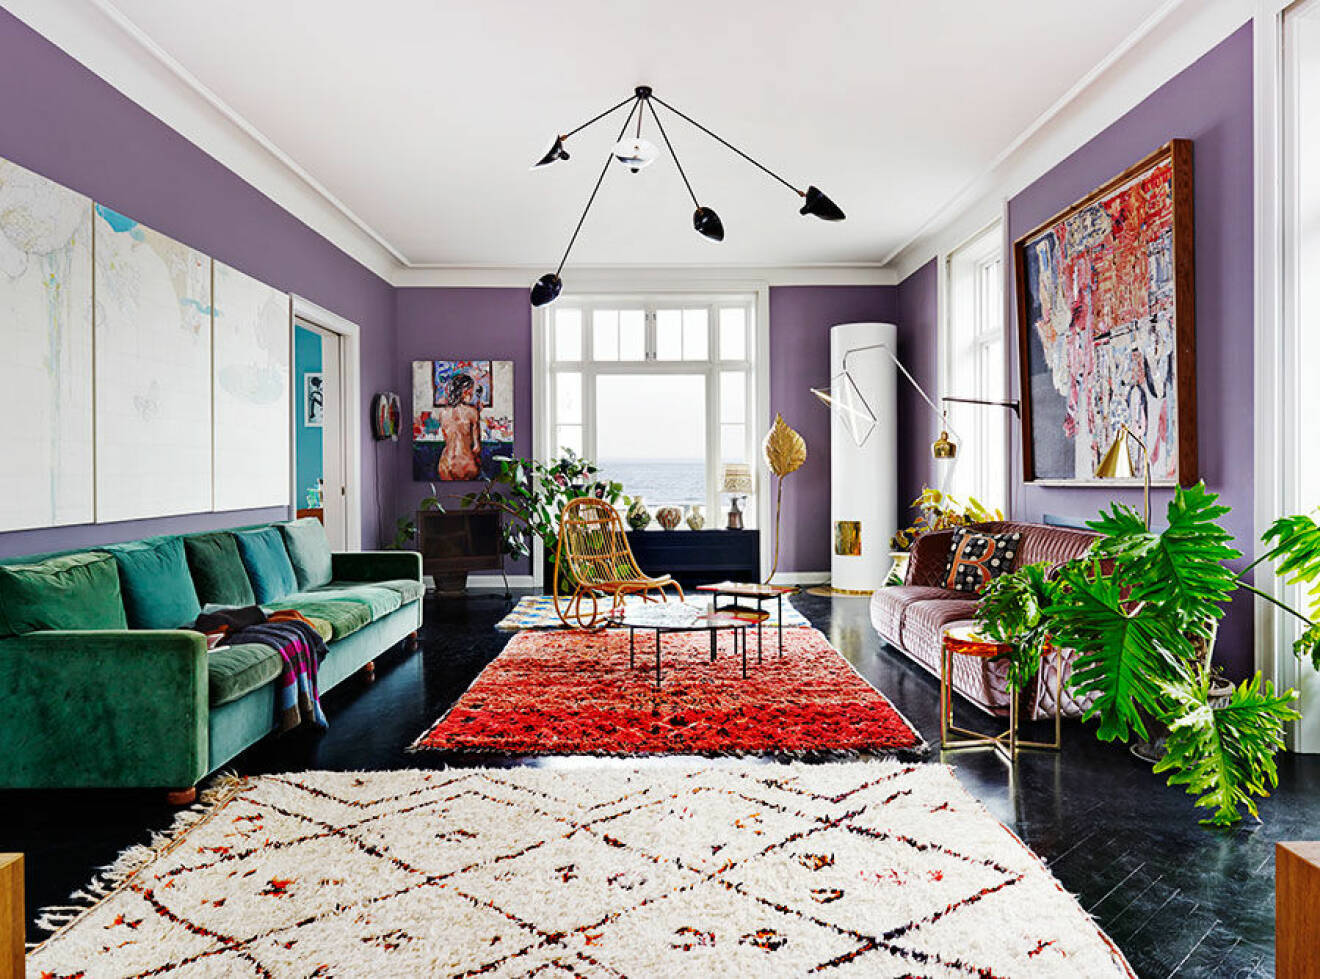 vardagsrum_livingroom_purple